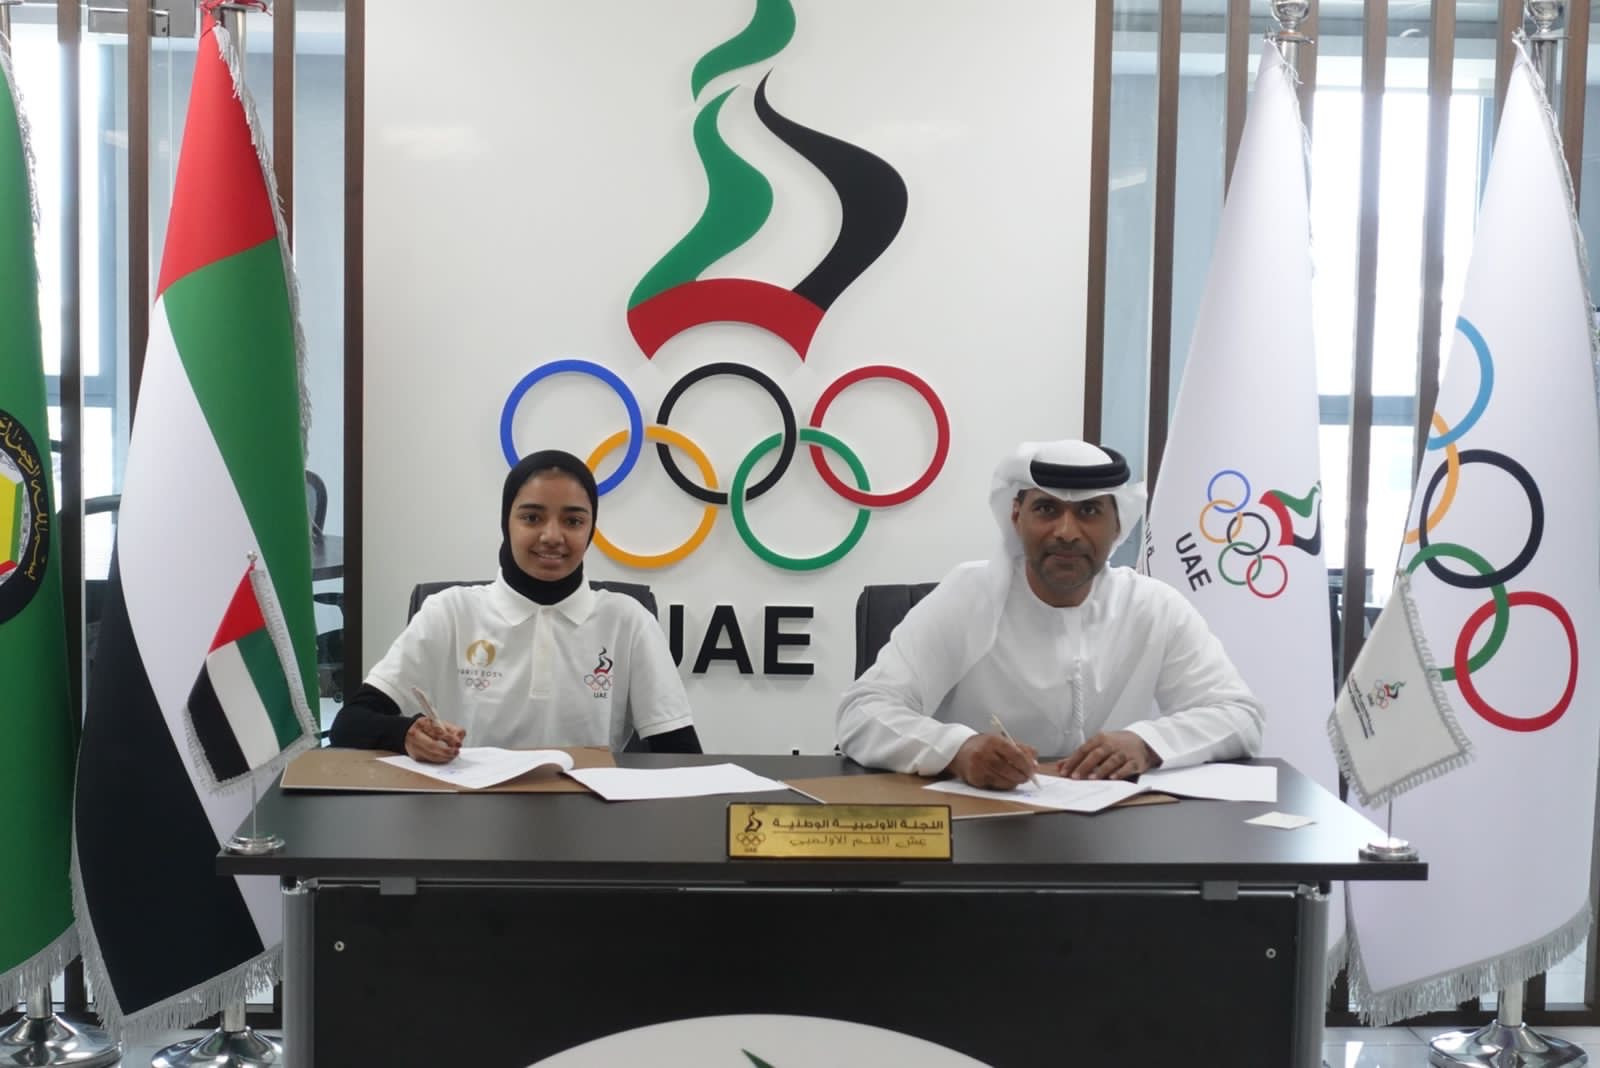 Taekwondo athletes included in UAE NOC grant agreement 